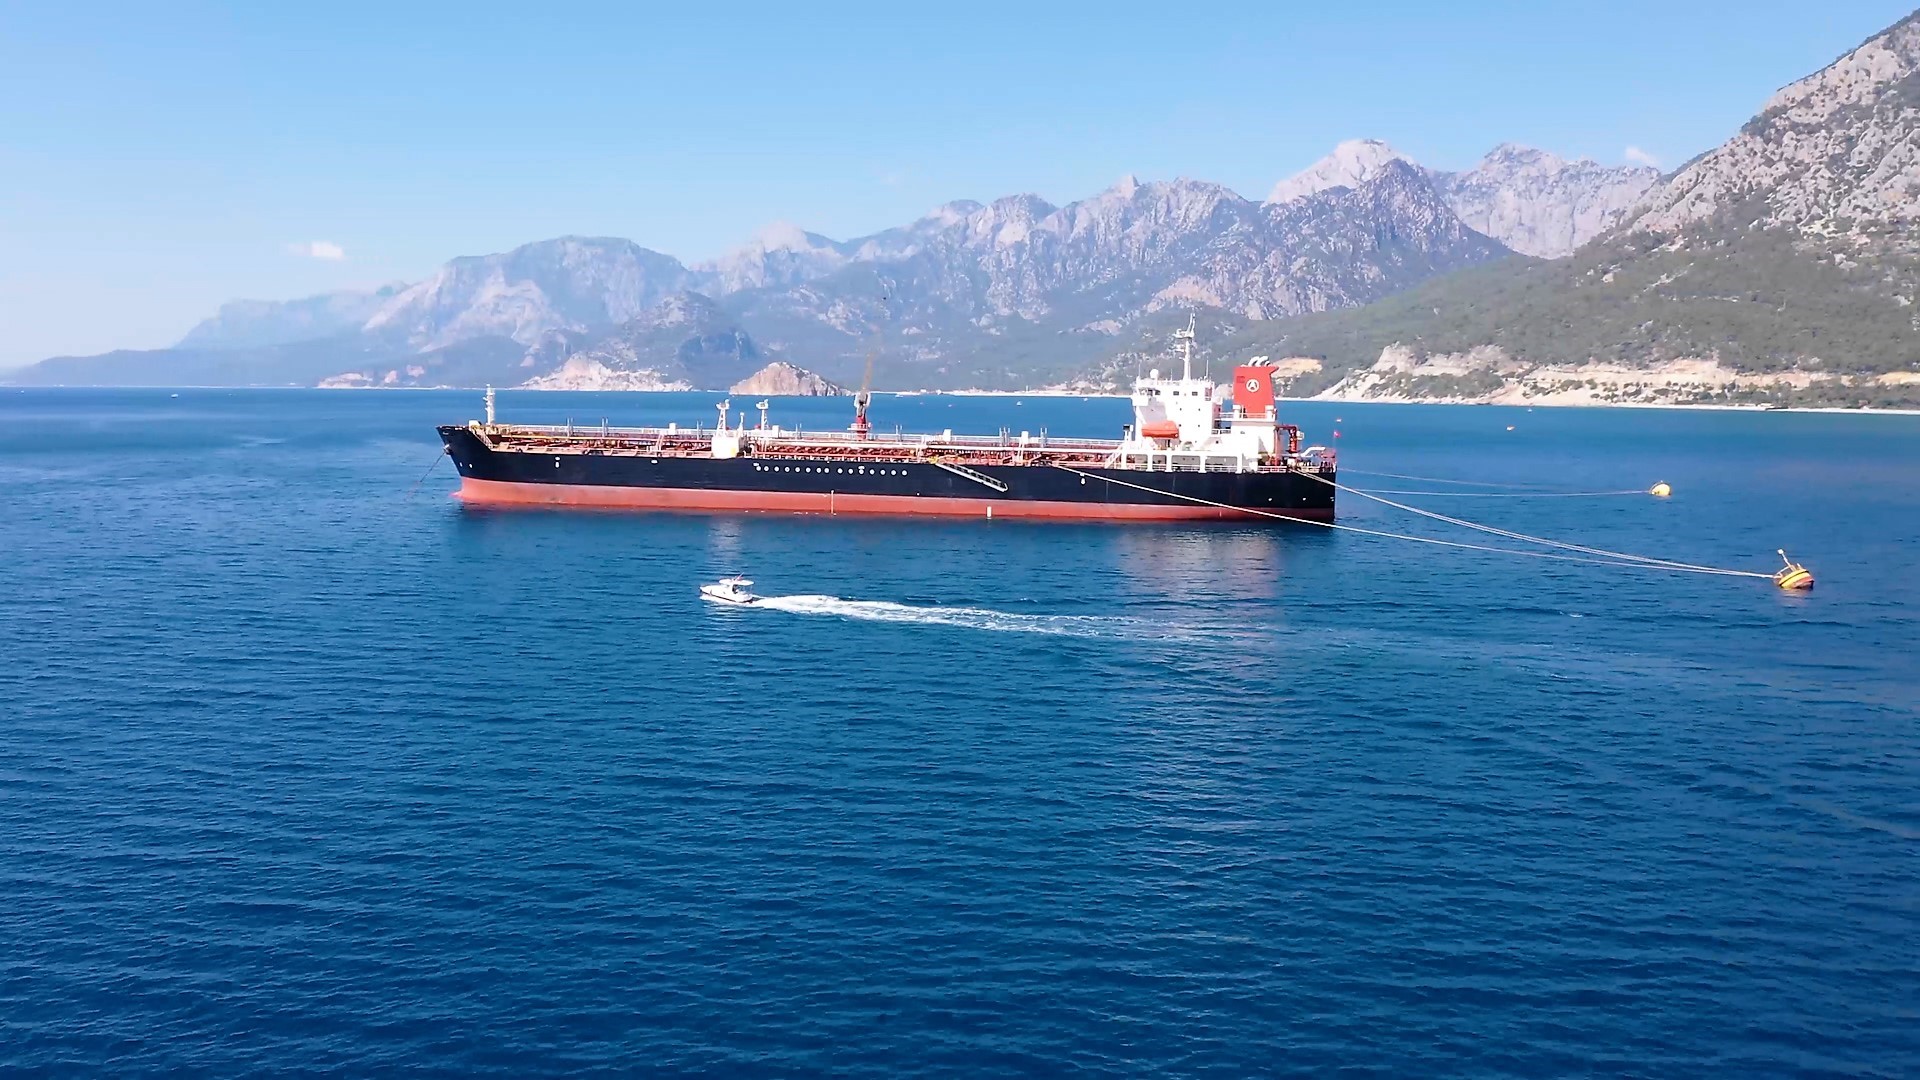 Antalya'da denizi kirleten 42 gemiye milyonlarca ceza kesildi